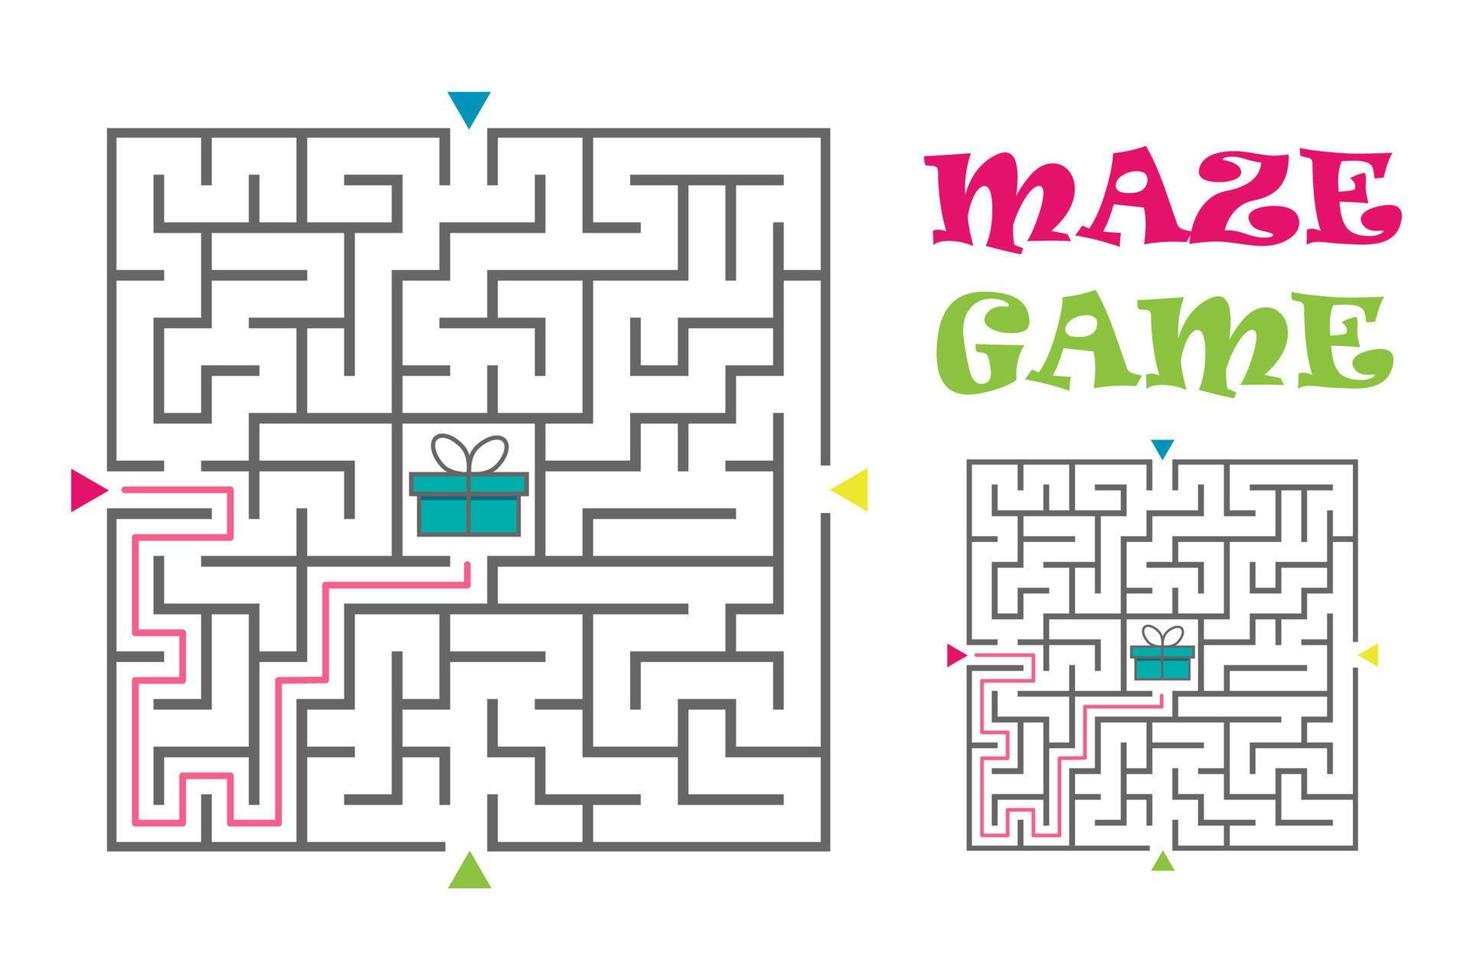 Quadratisches Labyrinth Labyrinthspiel für Kinder. logisches Rätsel. Vier Eingänge und ein richtiger Weg. flache vektorillustration lokalisiert auf weißem hintergrund. vektor